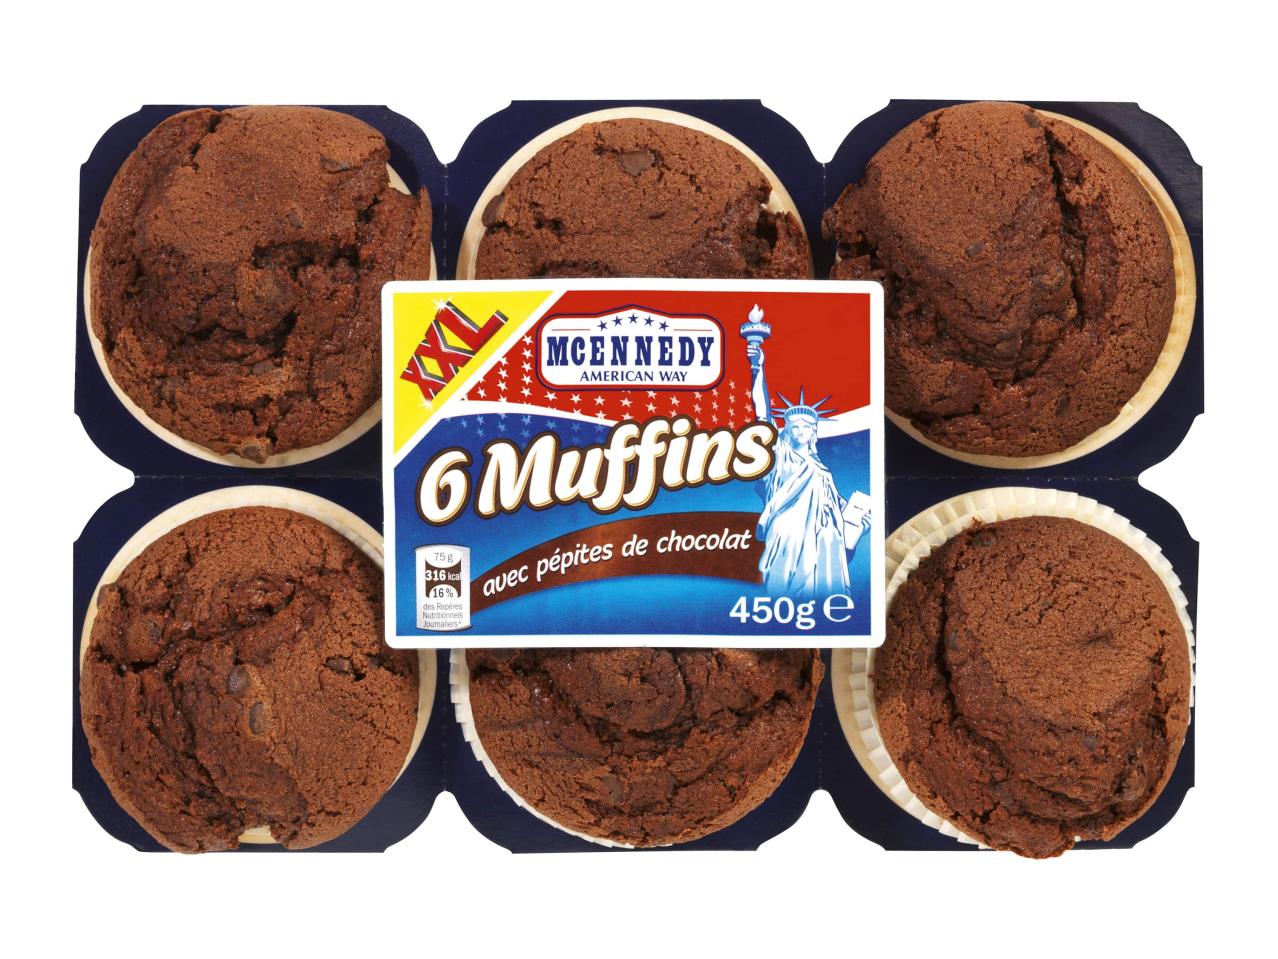 6 muffins aux pépites de chocolat1